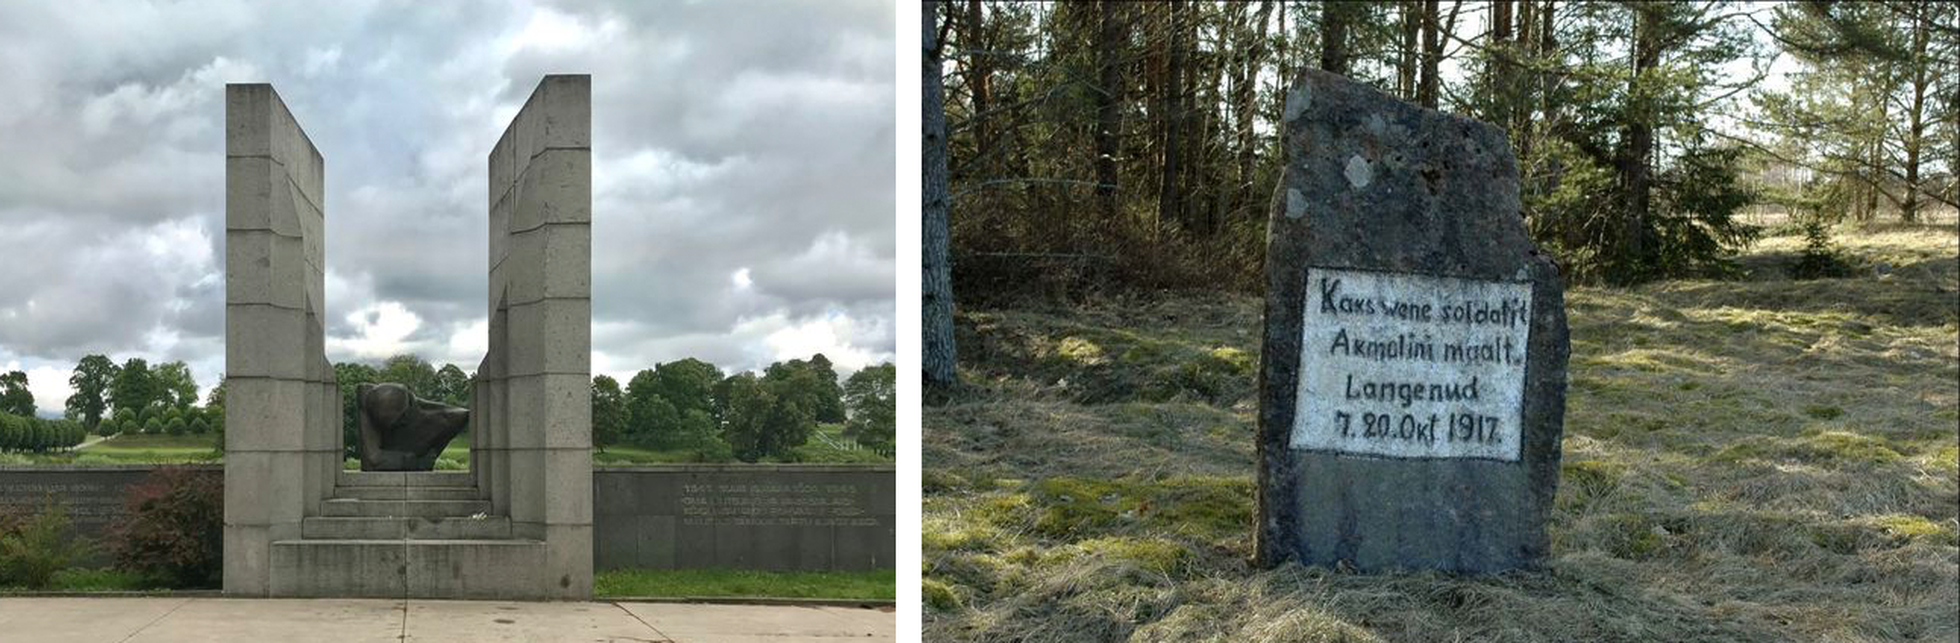 Мемориал павшим во Второй мировой войне в Тарту (слева) и Могила двух неизвестных солдат на Хийумаа (справа).